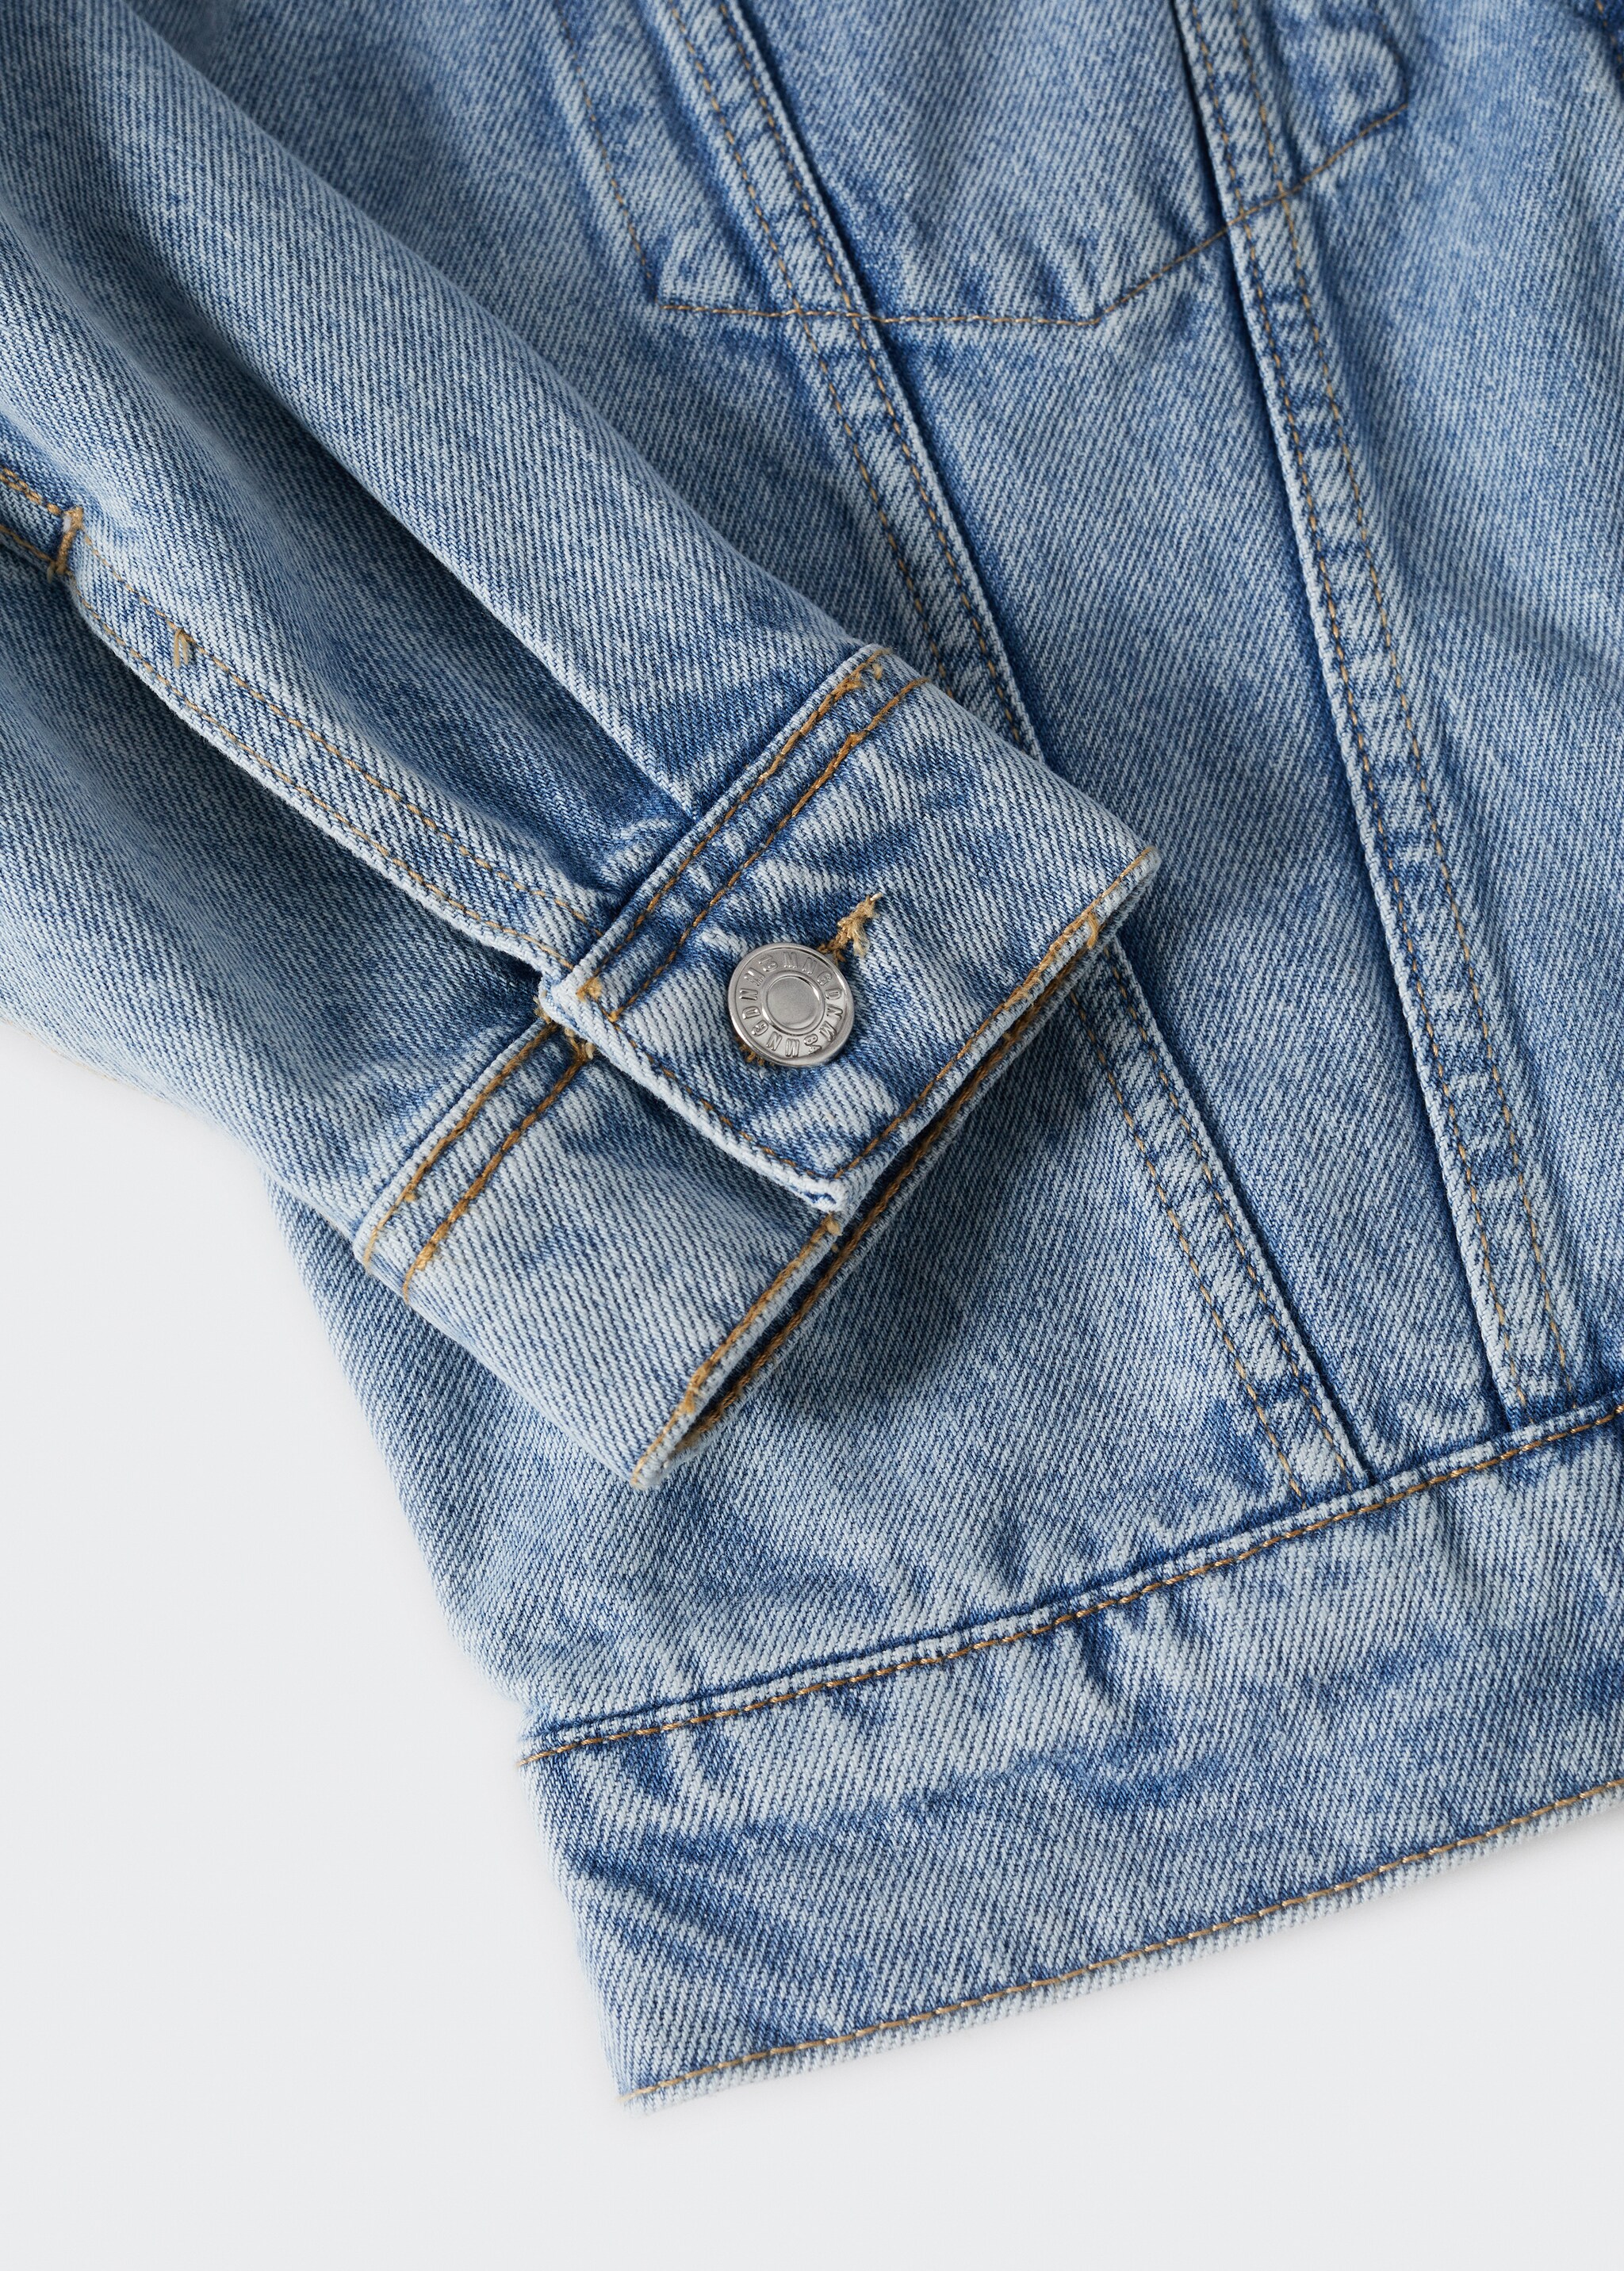 Blouson jean poches - Détail de l'article 8